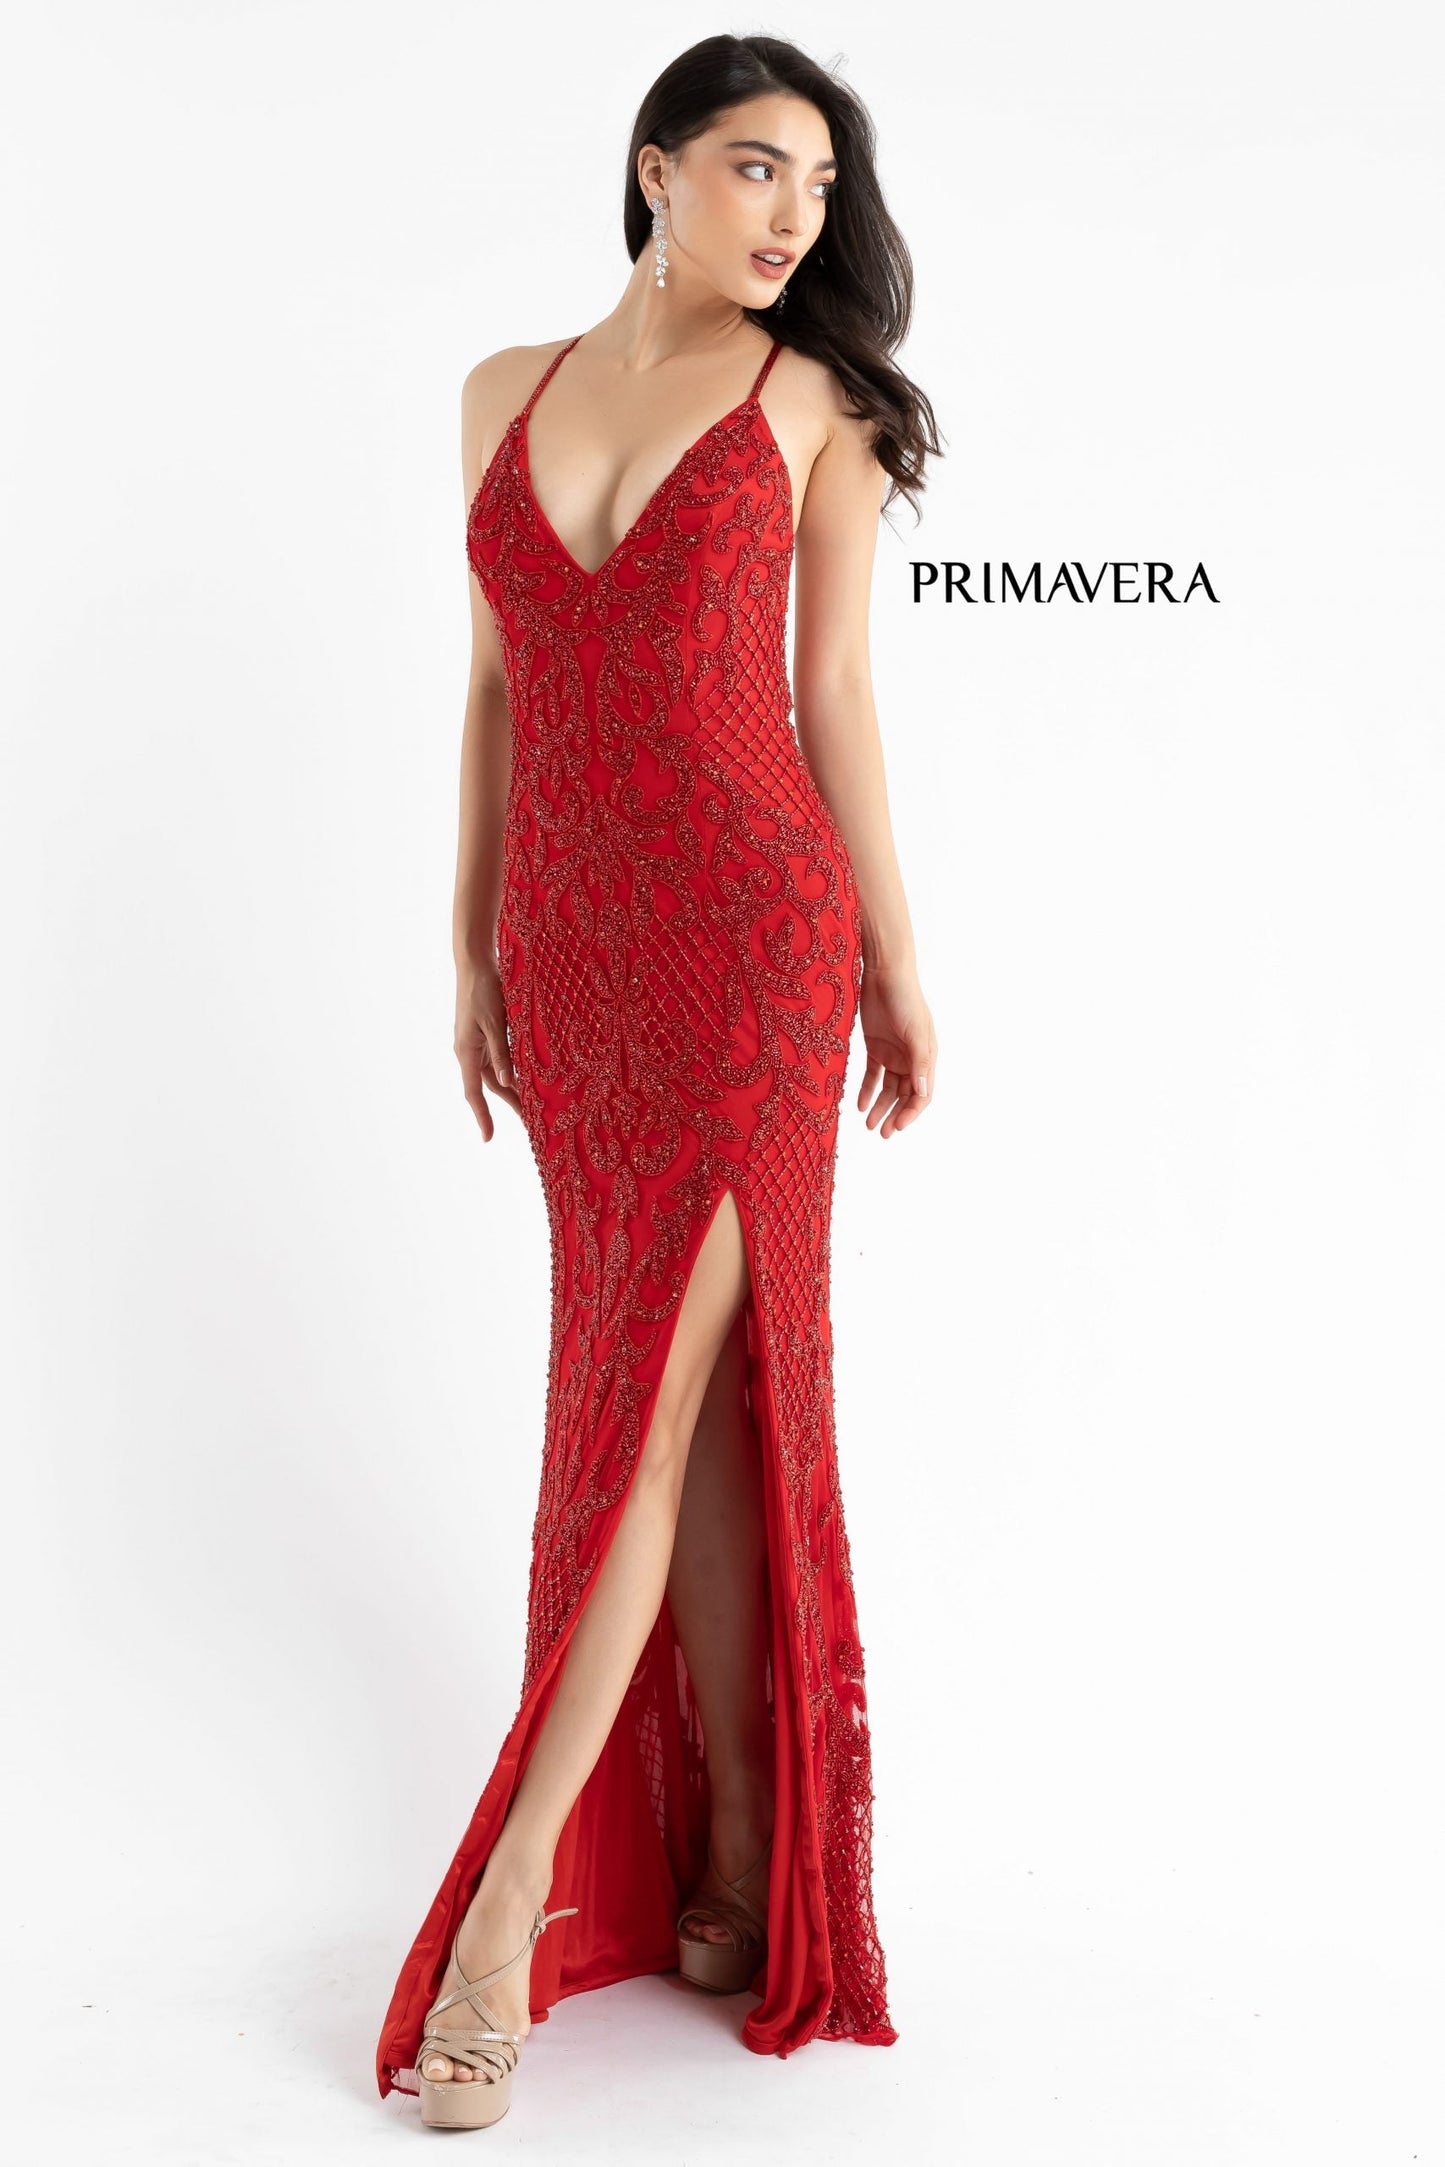 Primavera-Couture-3721-red-prom-dress-side-long-beaded-v-neckline-slit-crisscross-back